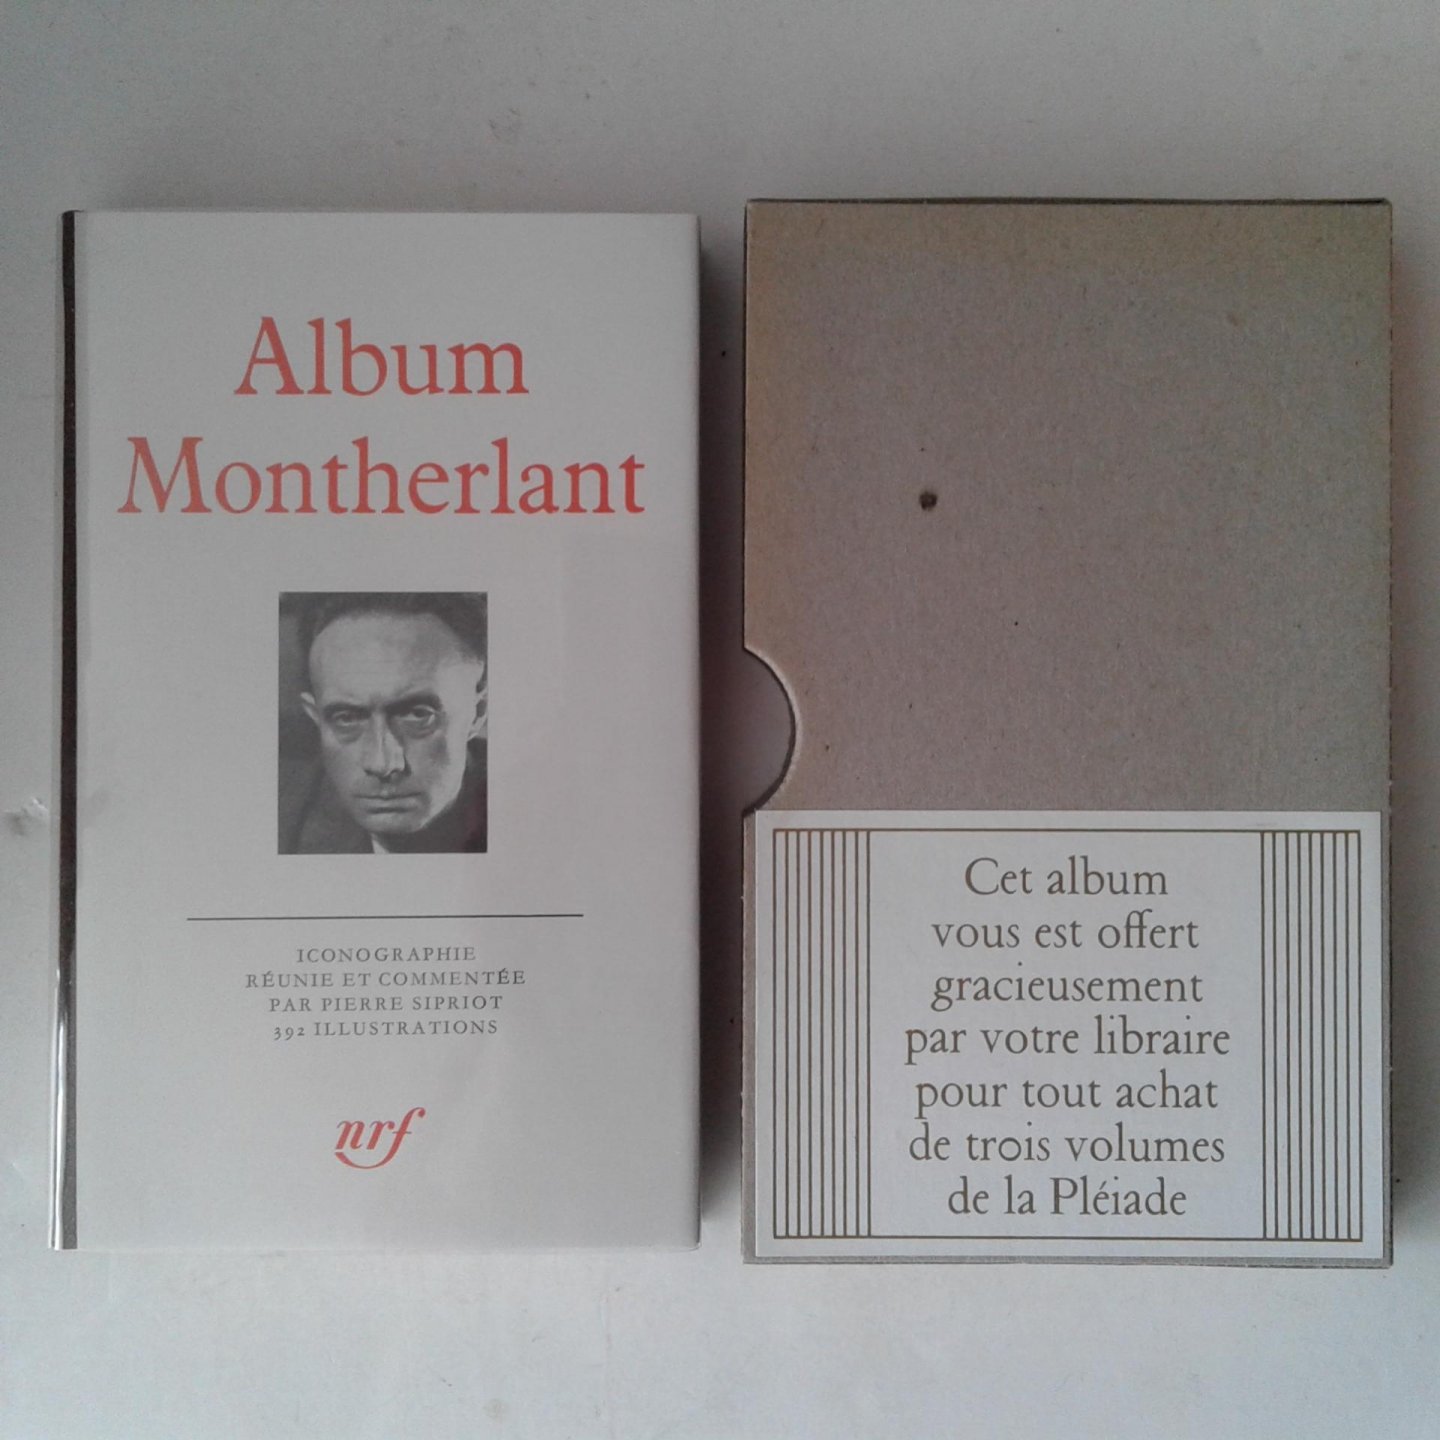  - Album Montherlant